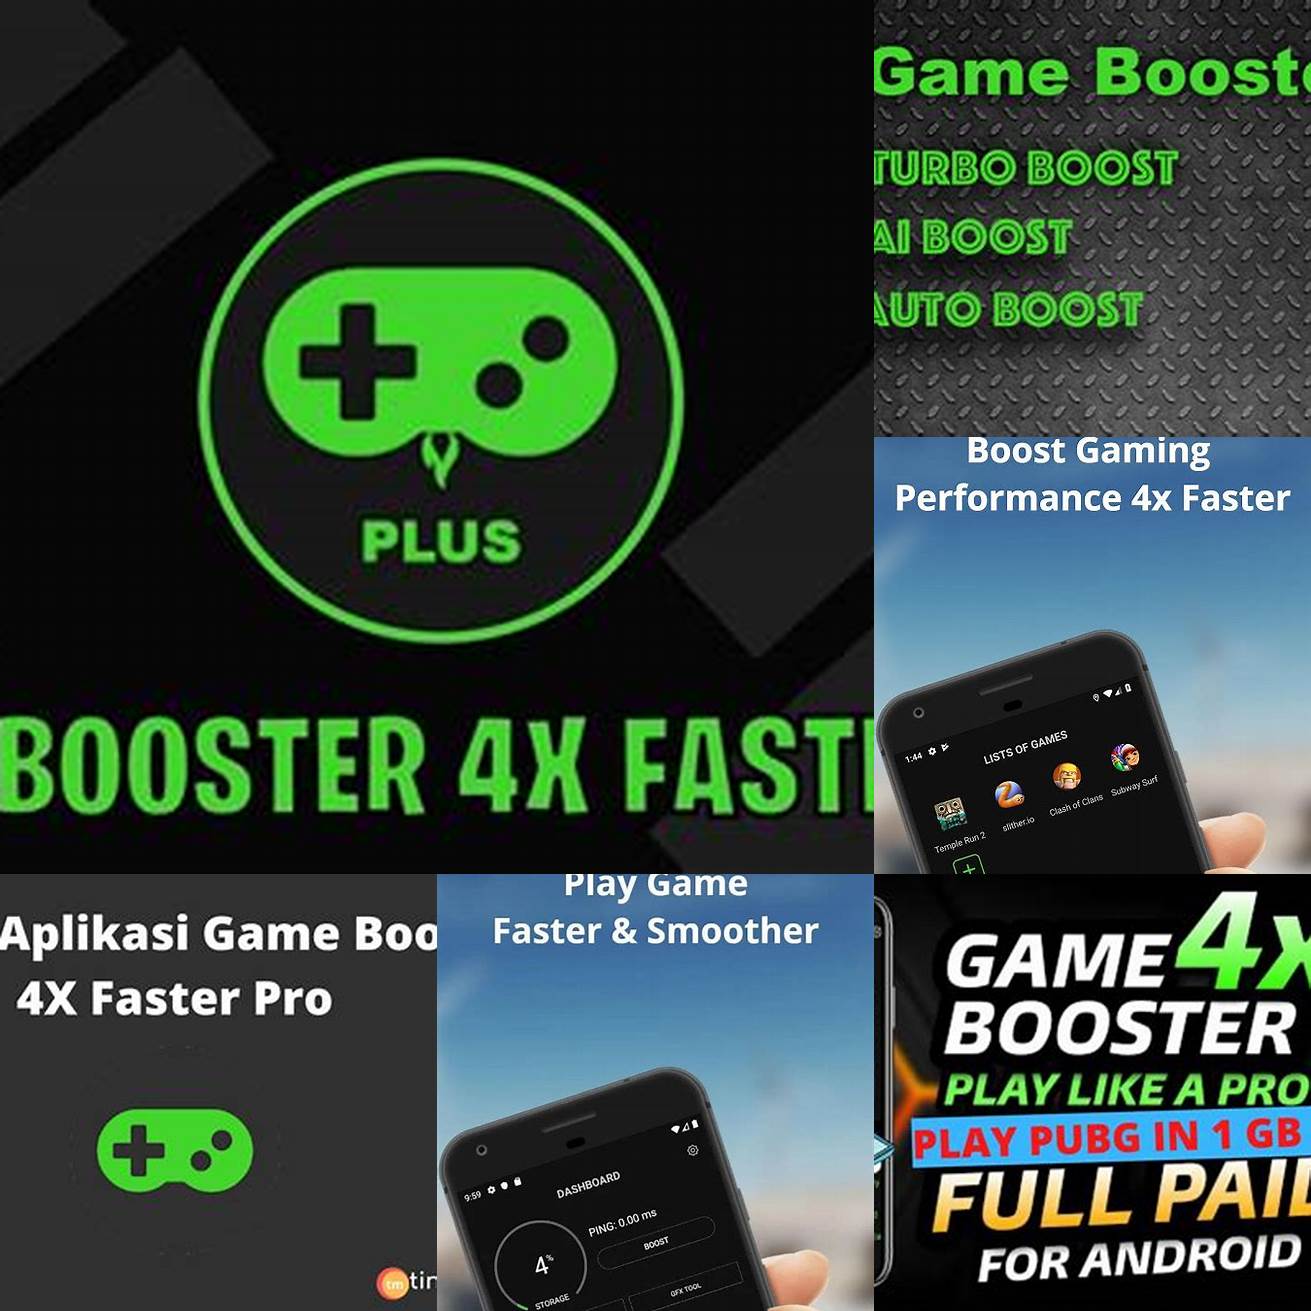 Optimasi Jaringan Game Booster 4x Faster Pro Apk akan membantu meningkatkan koneksi internet Anda untuk memastikan game Anda berjalan dengan lancar